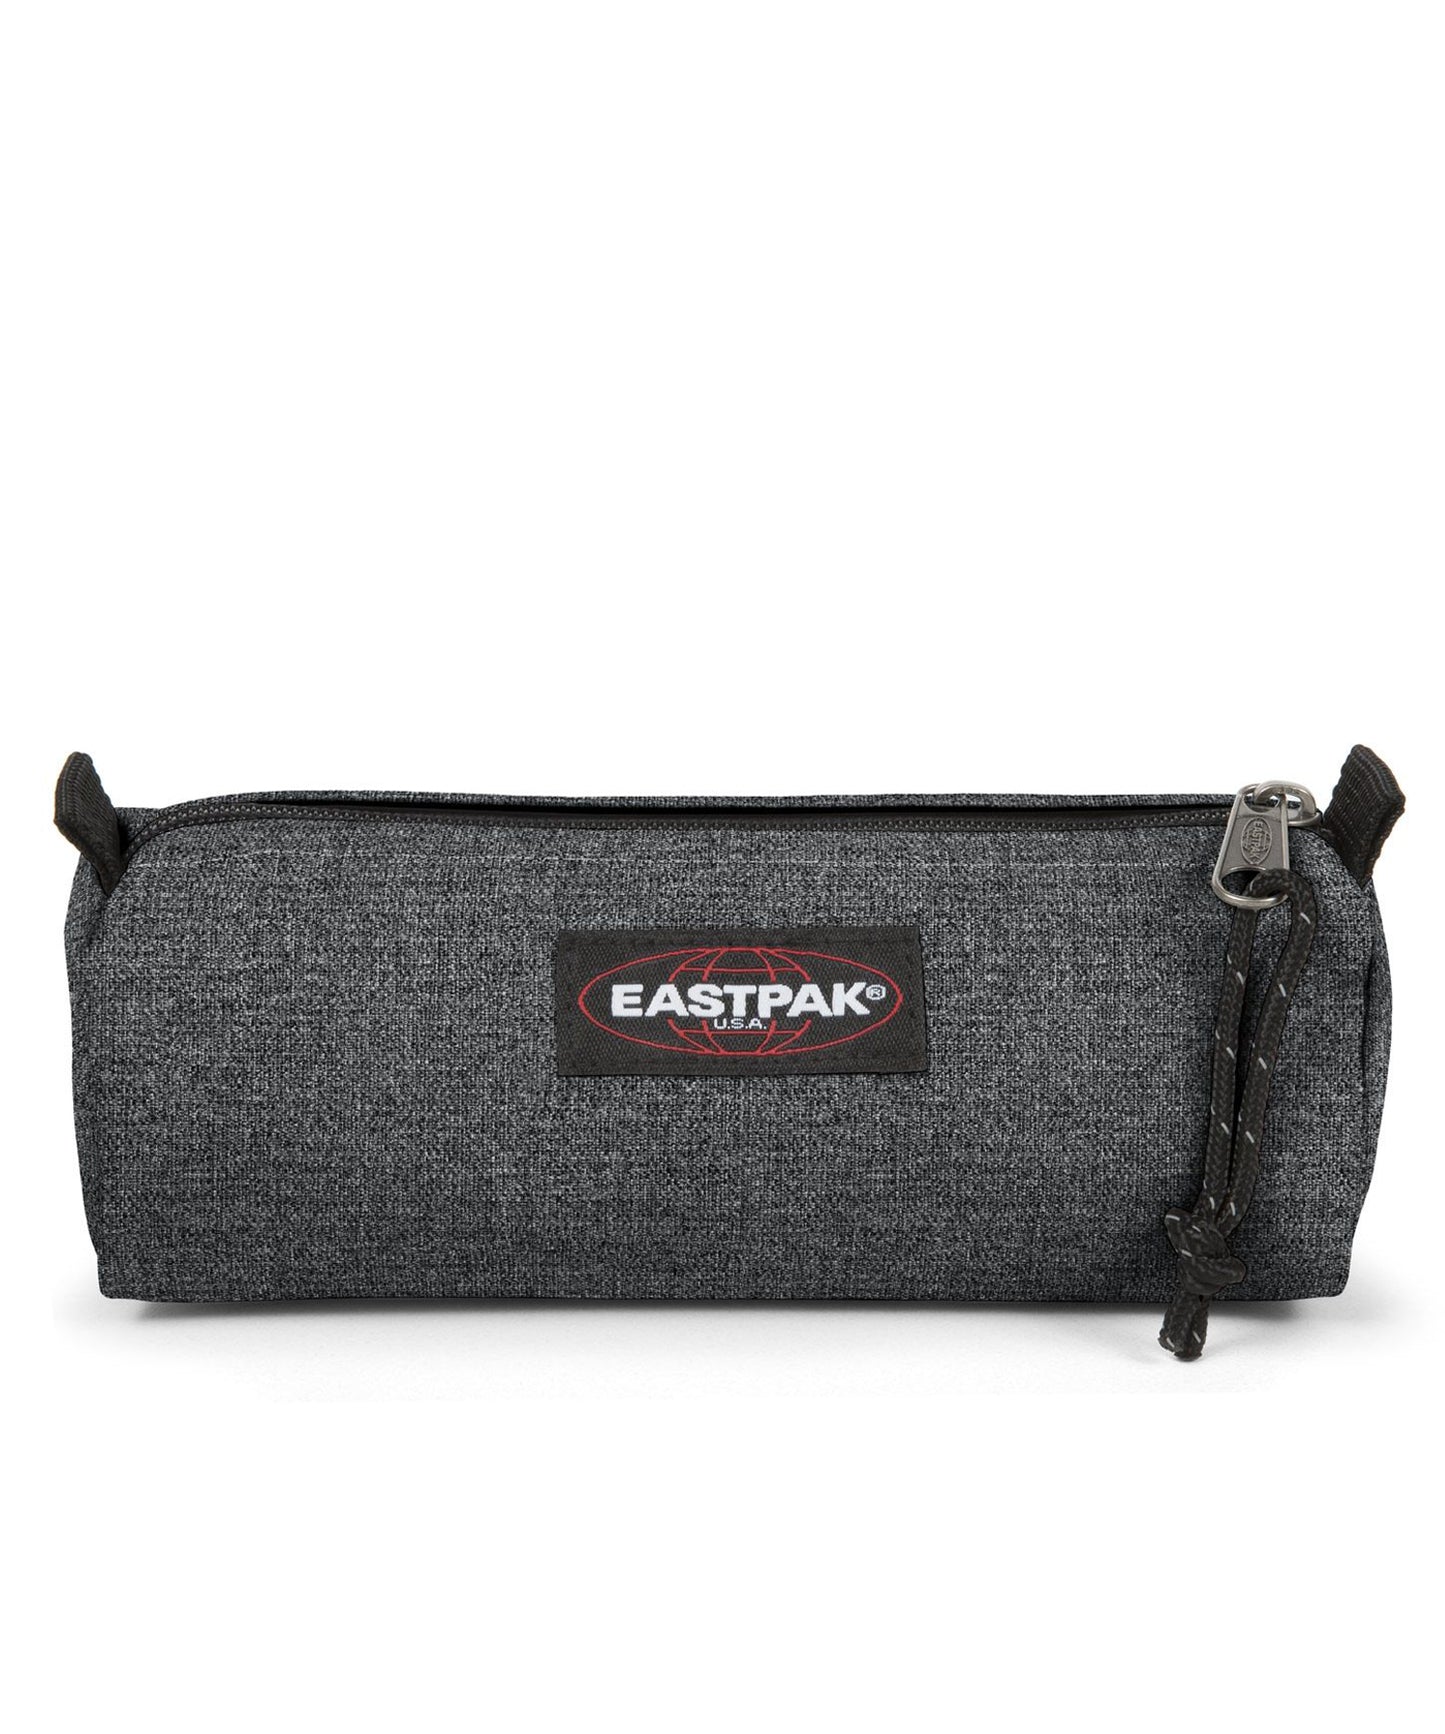 eastpak estuche benchmark de color black denim claro, practico, sencillo, y duradero, cierre con cremallera.